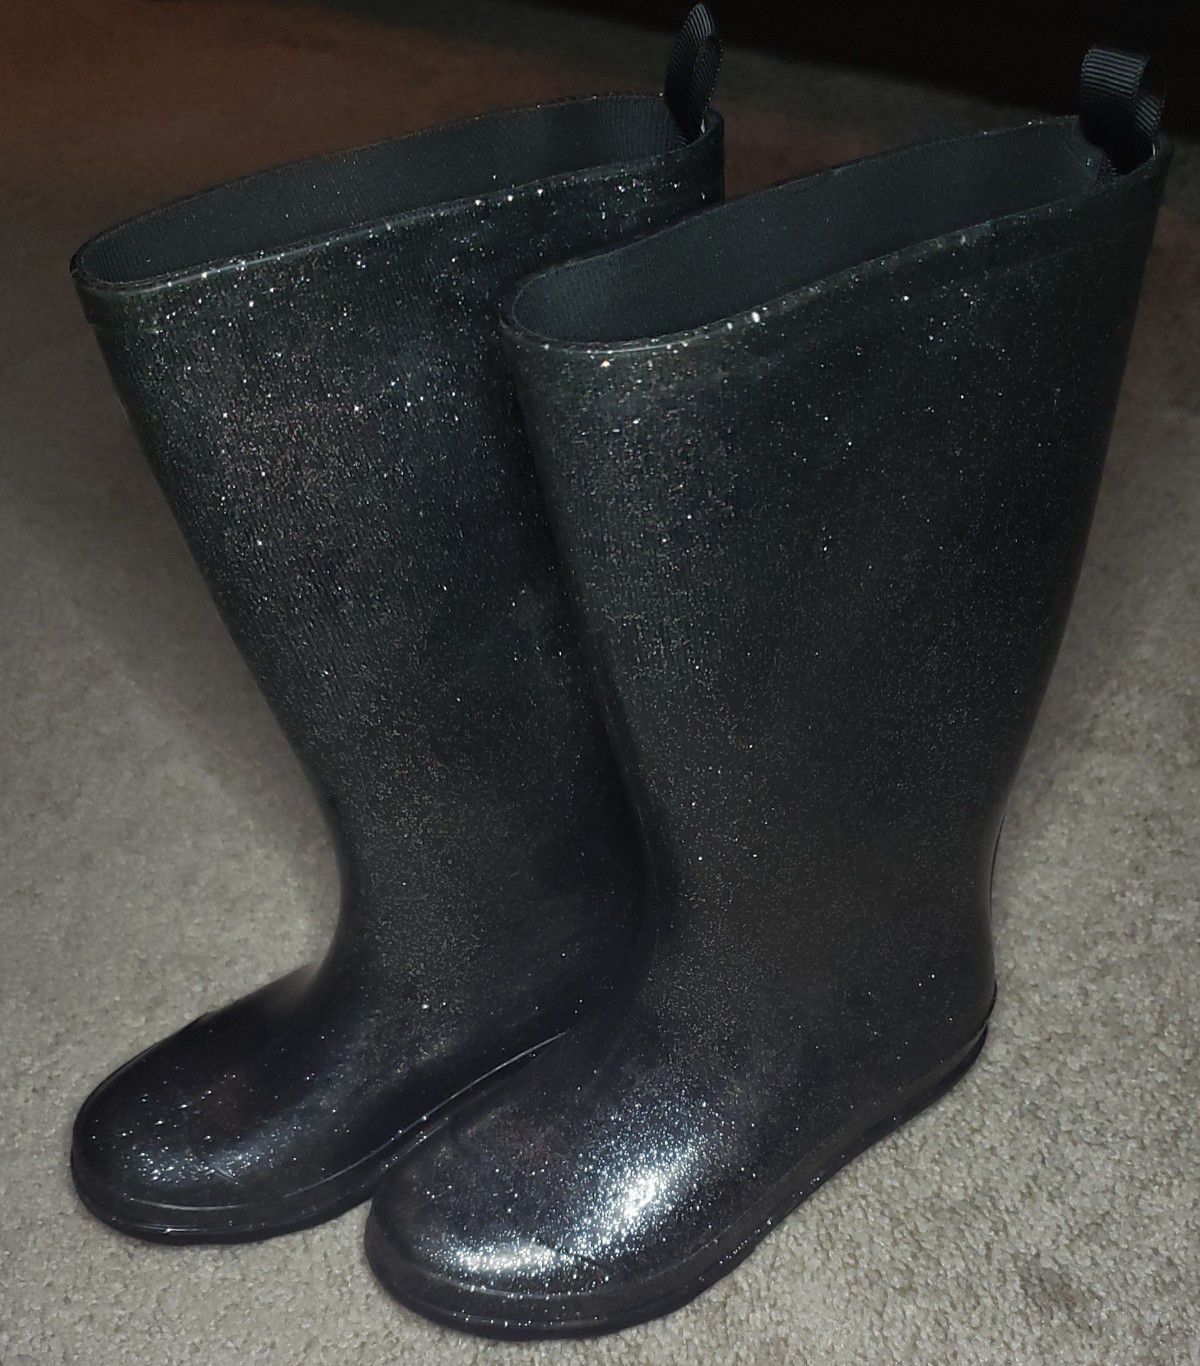 Girls rain boots